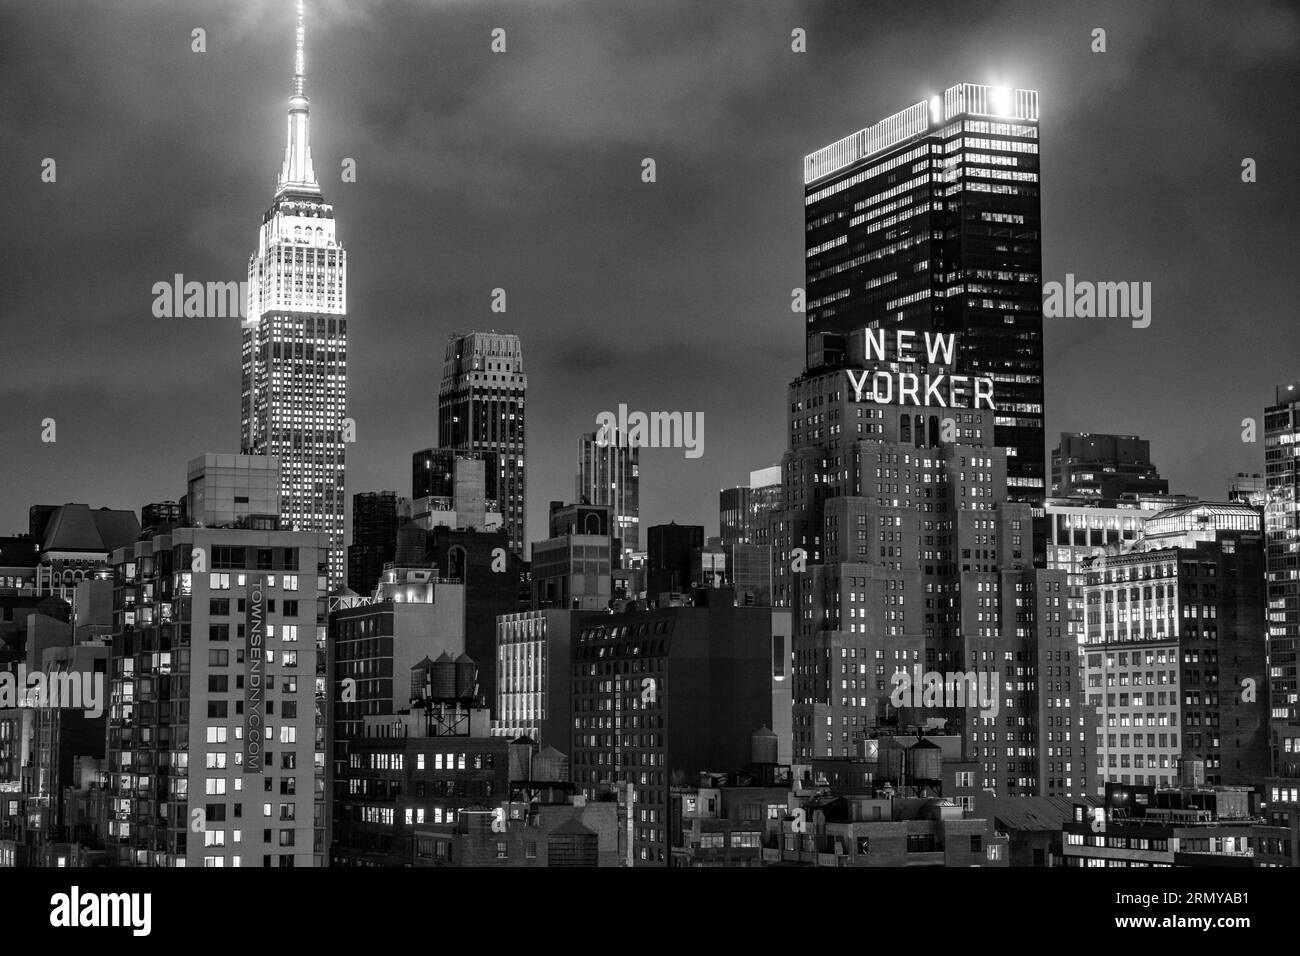 New York, New York, USA. 29 agosto 2023. L'Empire State Building (a sinistra) e il New Yorker Hotel (a destra) visti dall'Hell's Kitchen con lo skyline di Midtown New York City a night.Commercial immobili, economia di New York, grattacieli della finanza globale, affari internazionali, monumenti, attrazioni turistiche, osservatorio dell'Empire State Building. (Immagine di credito: © Taidgh Barron/ZUMA Press Wire) SOLO USO EDITORIALE! Non per USO commerciale! Foto Stock